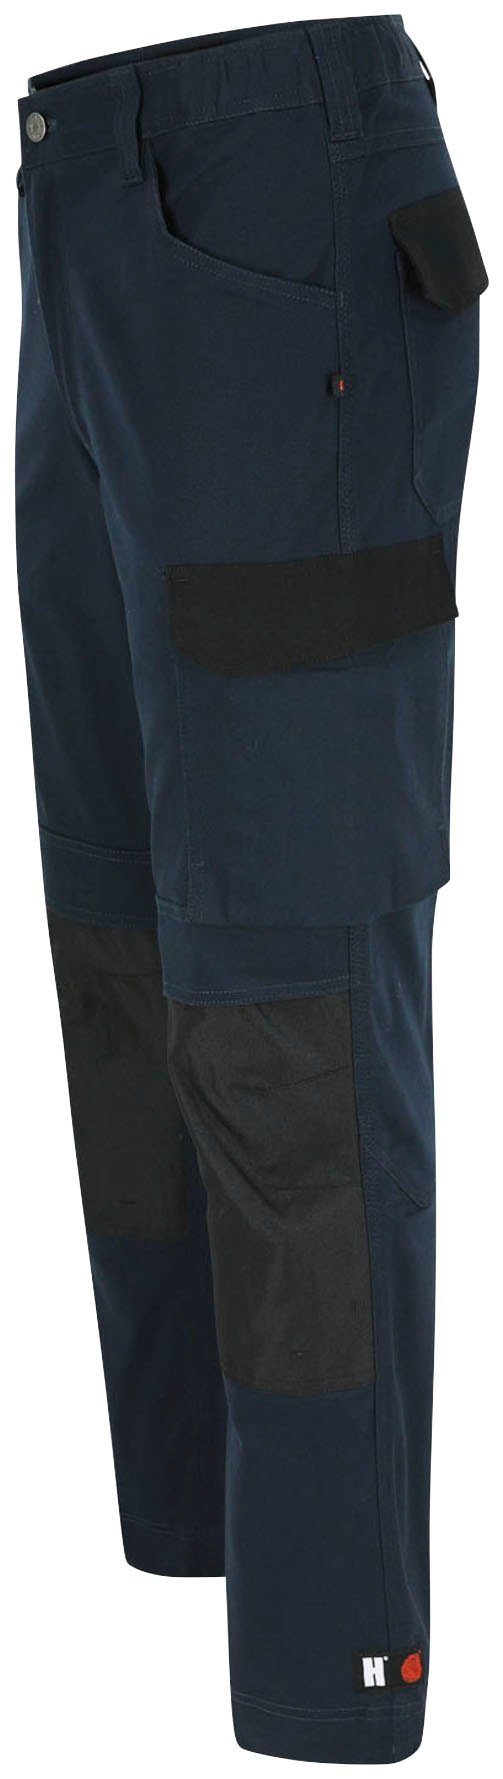 Arbeitshose Herock Slim Passform, marine 2-Wege-Stretch, DERO Multi-Pocket, Fit wasserabweisend